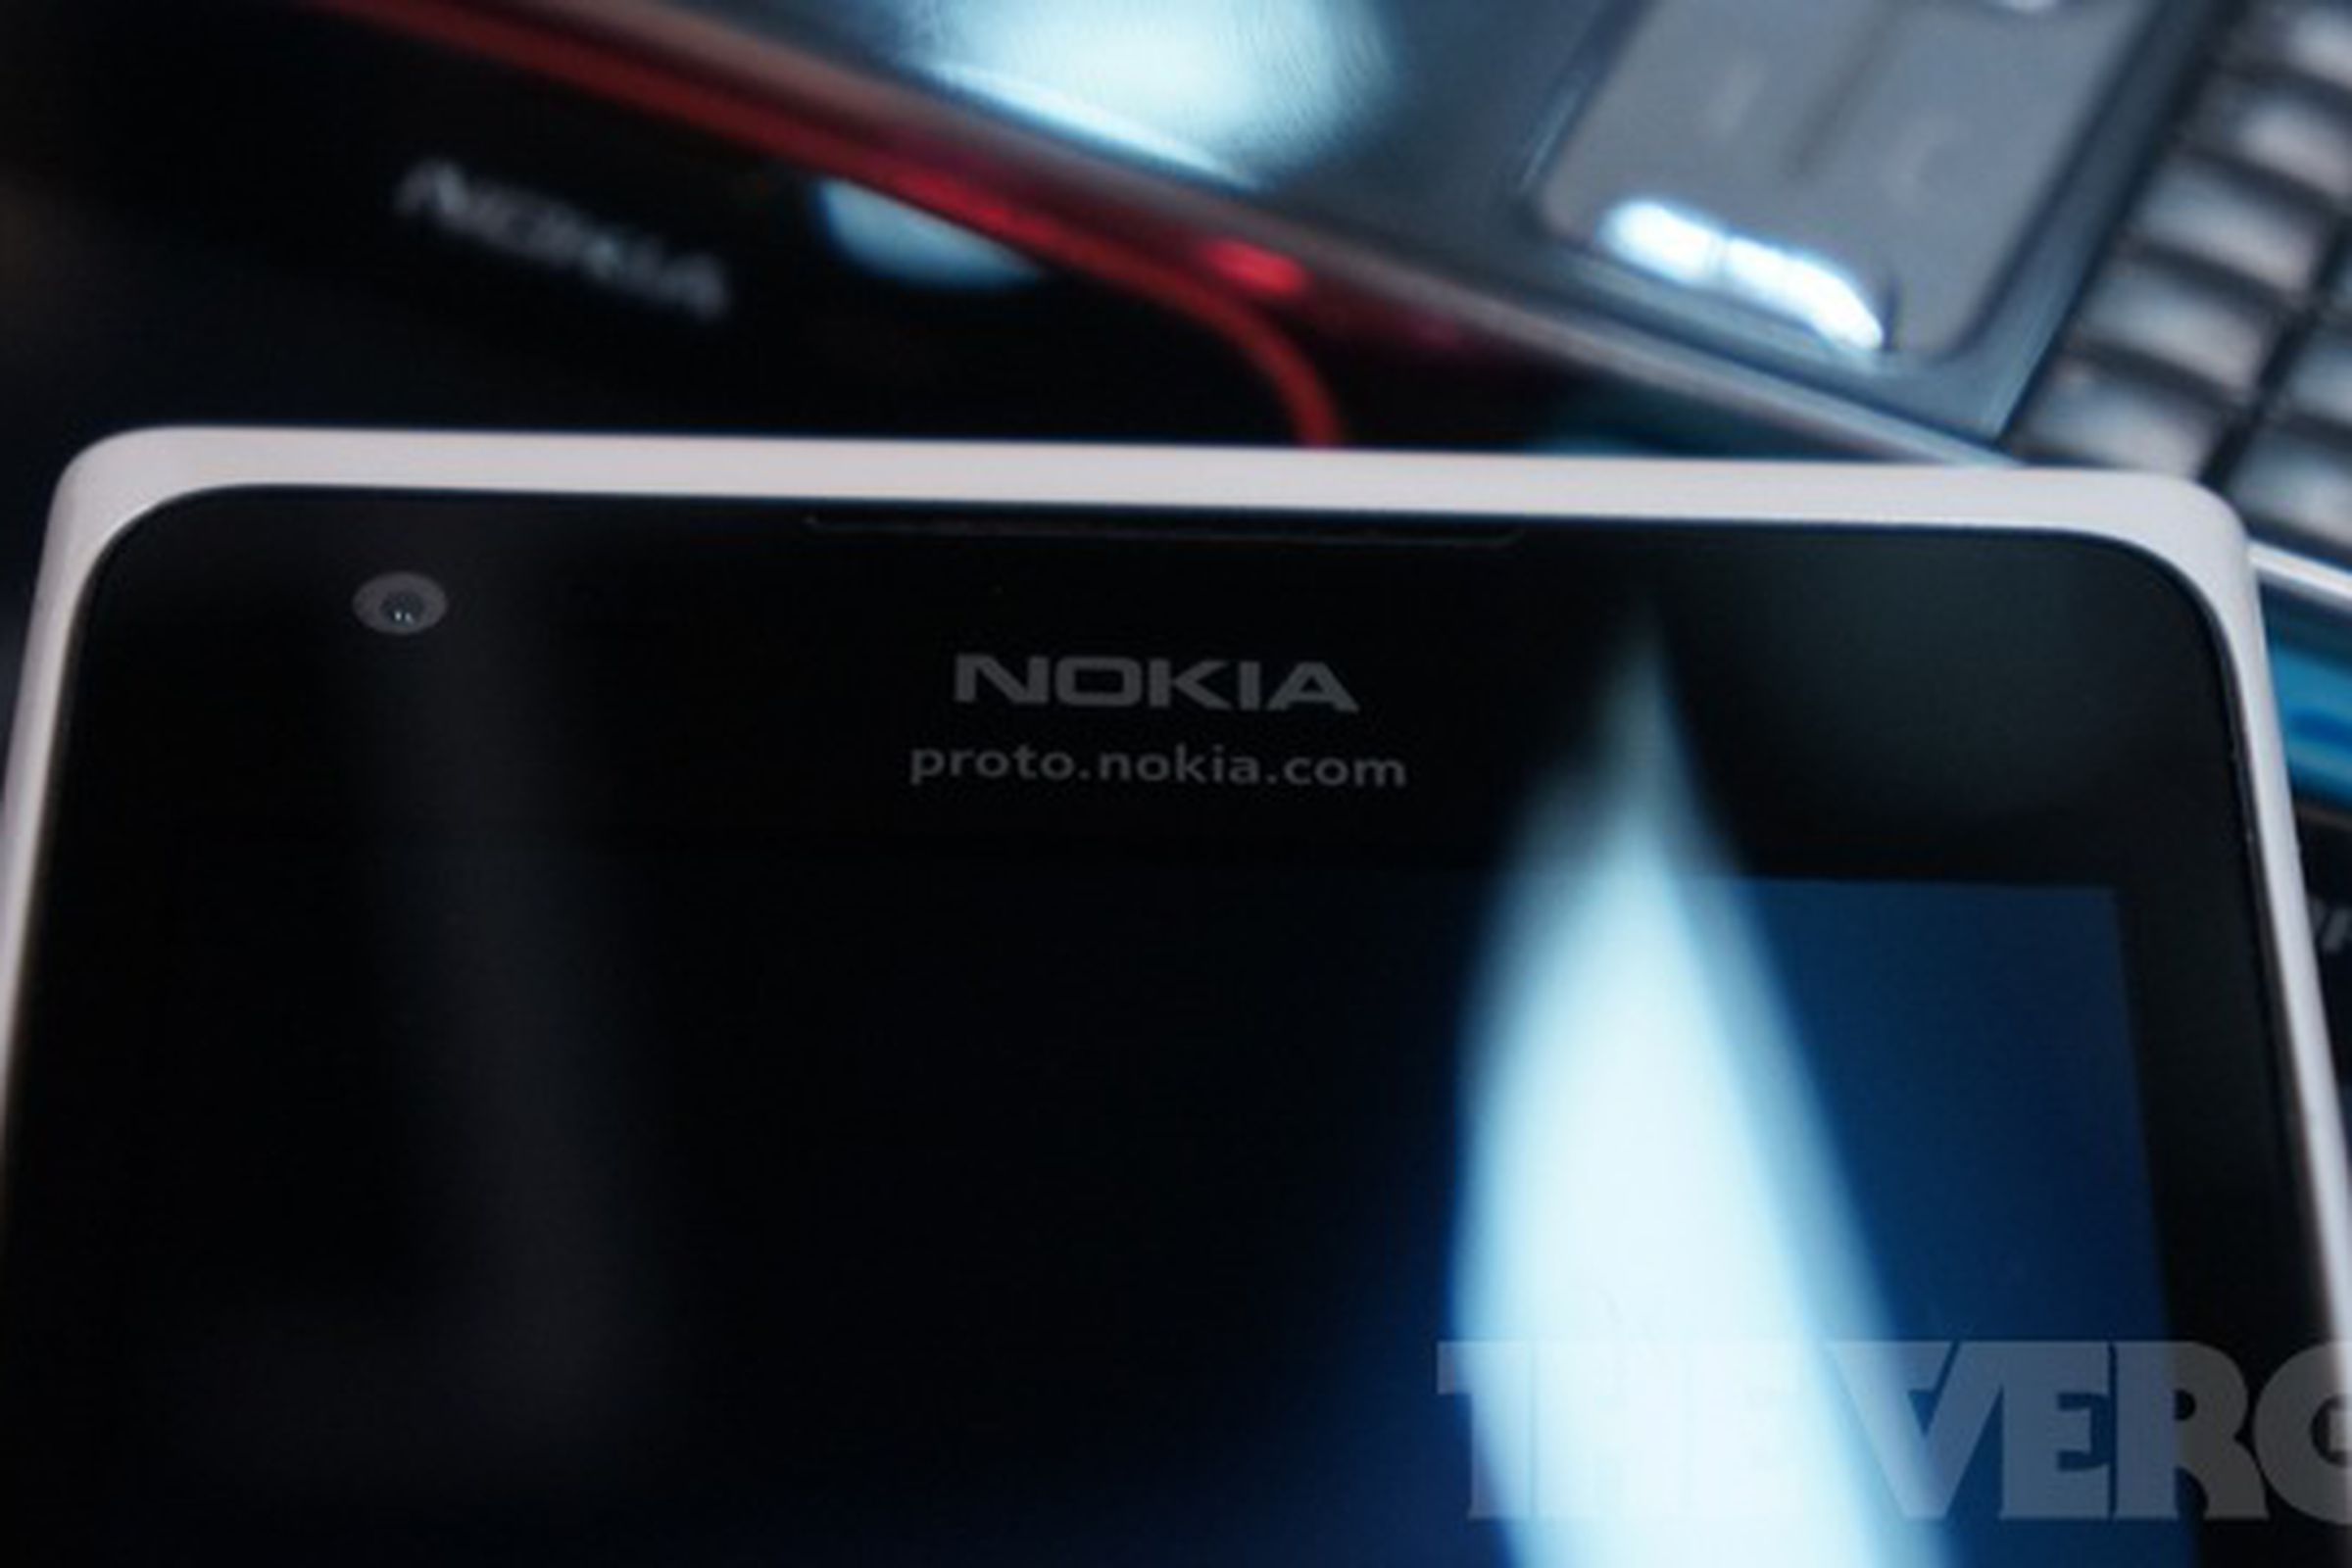 Nokia proto